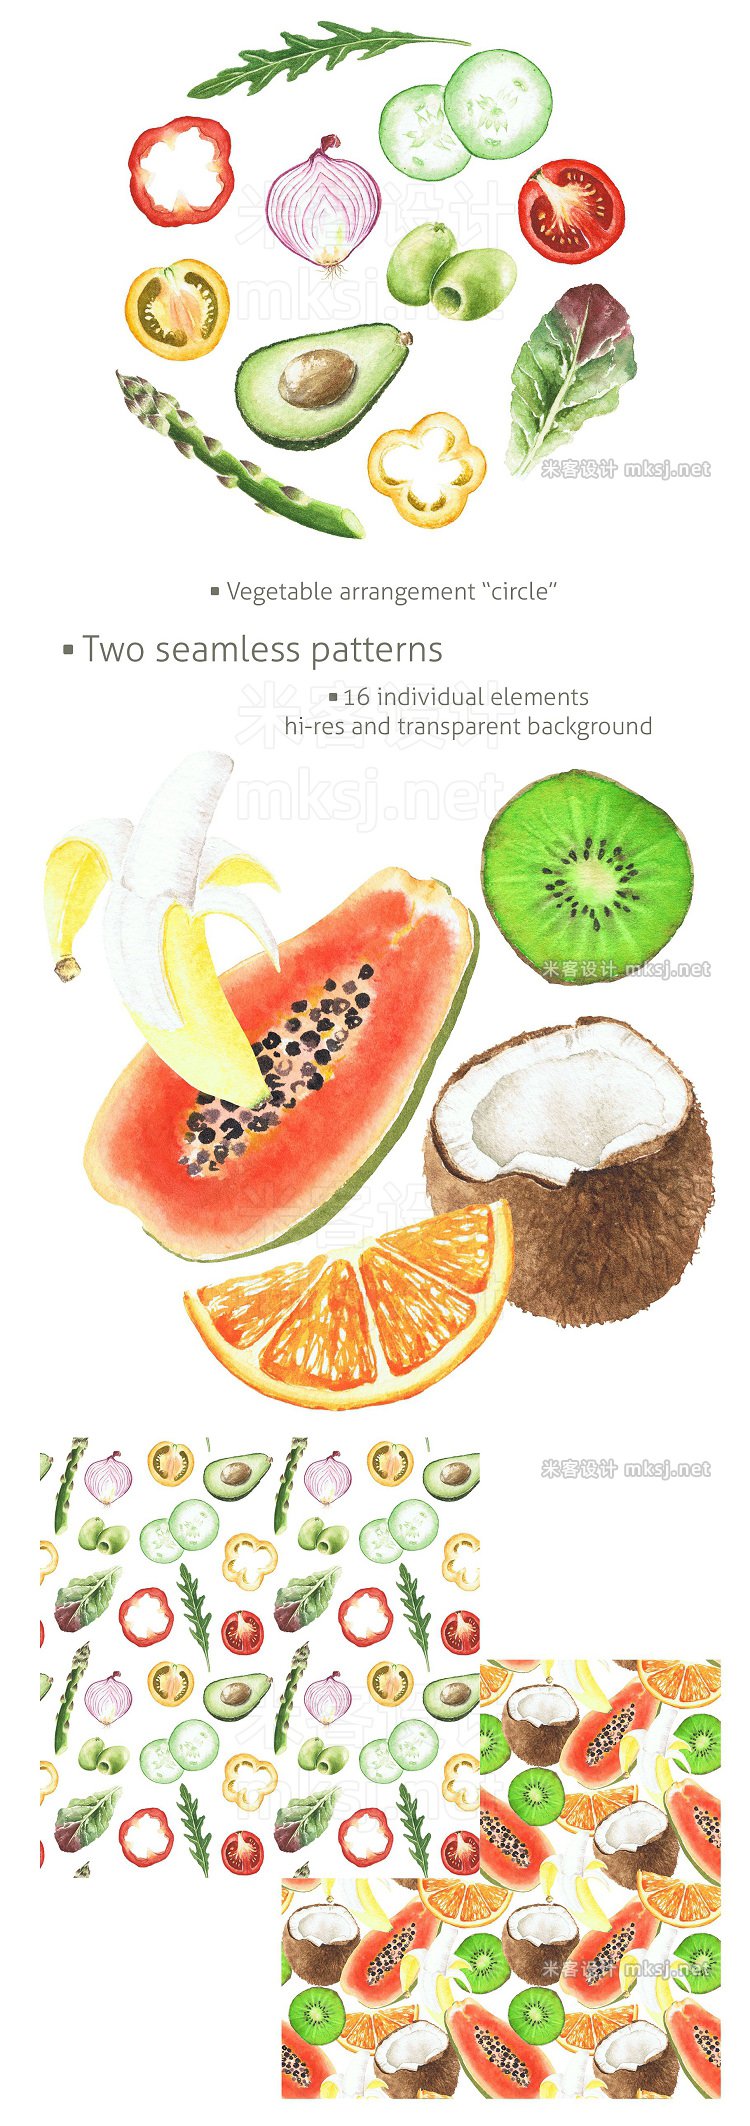 png素材 Watercolor clipart Vegan Mix summer